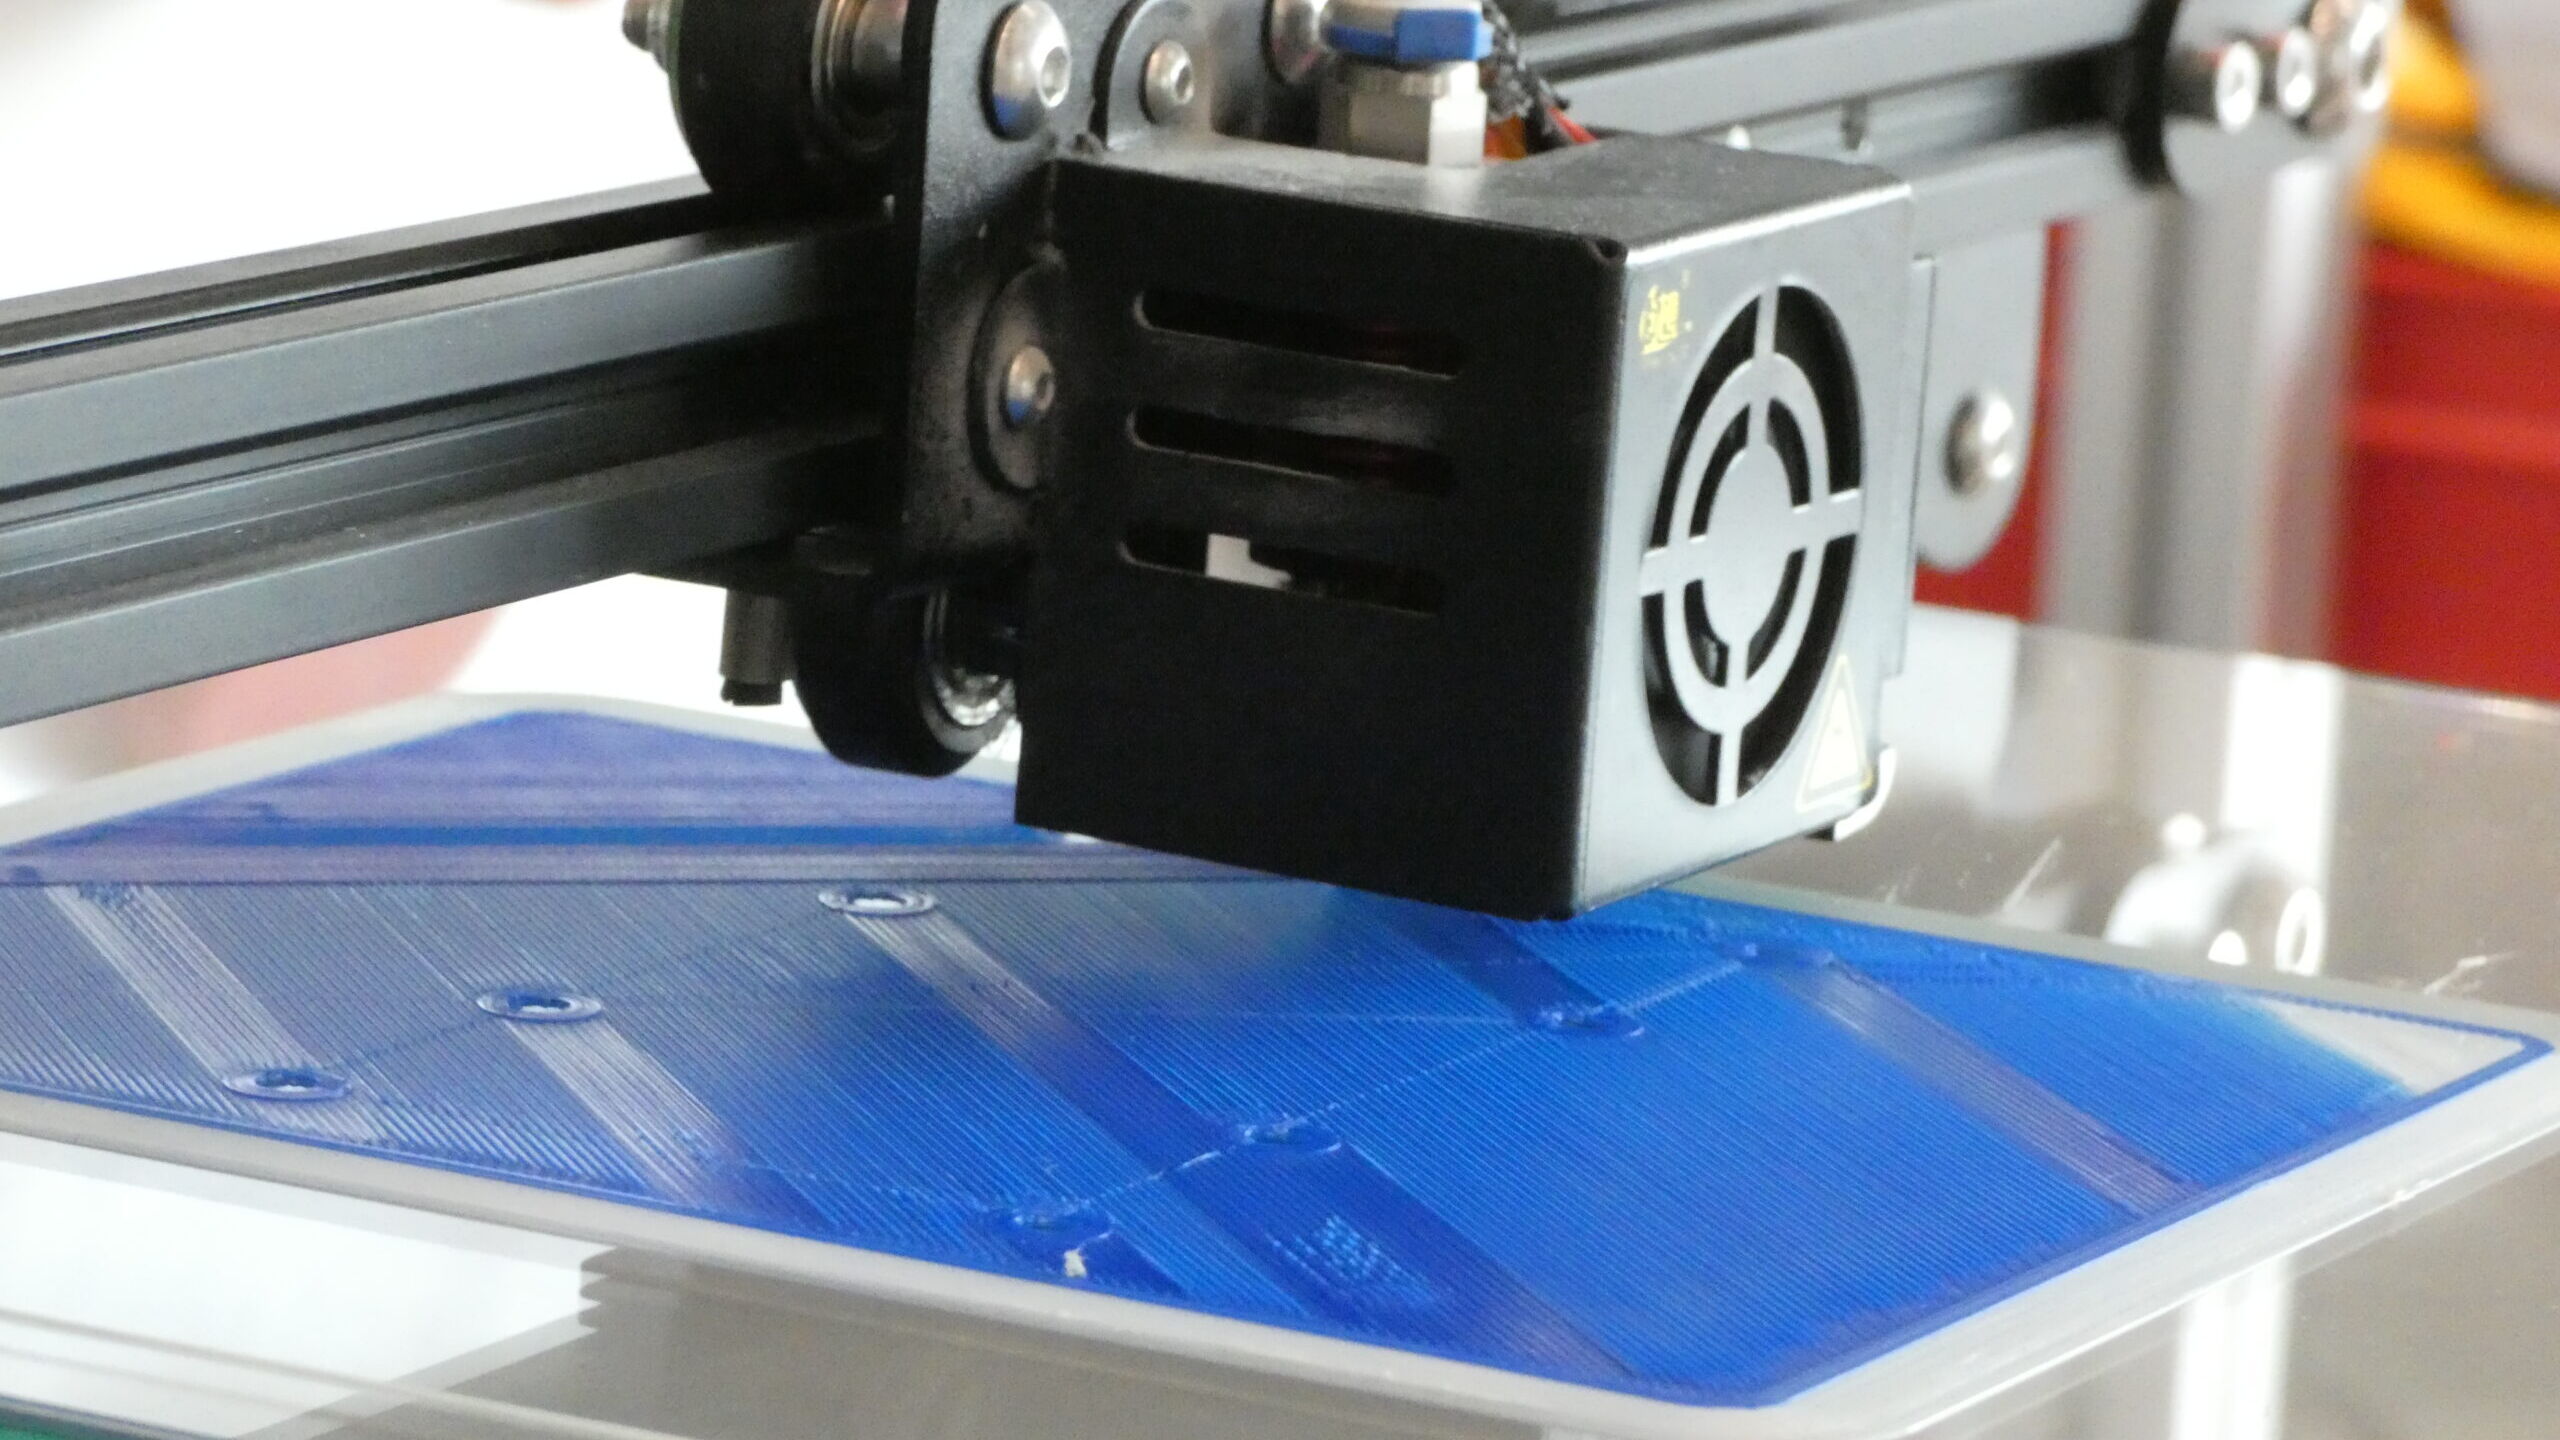 3D tiskárna na montážní lince dronů v Innovation Park v Biel/Bienne